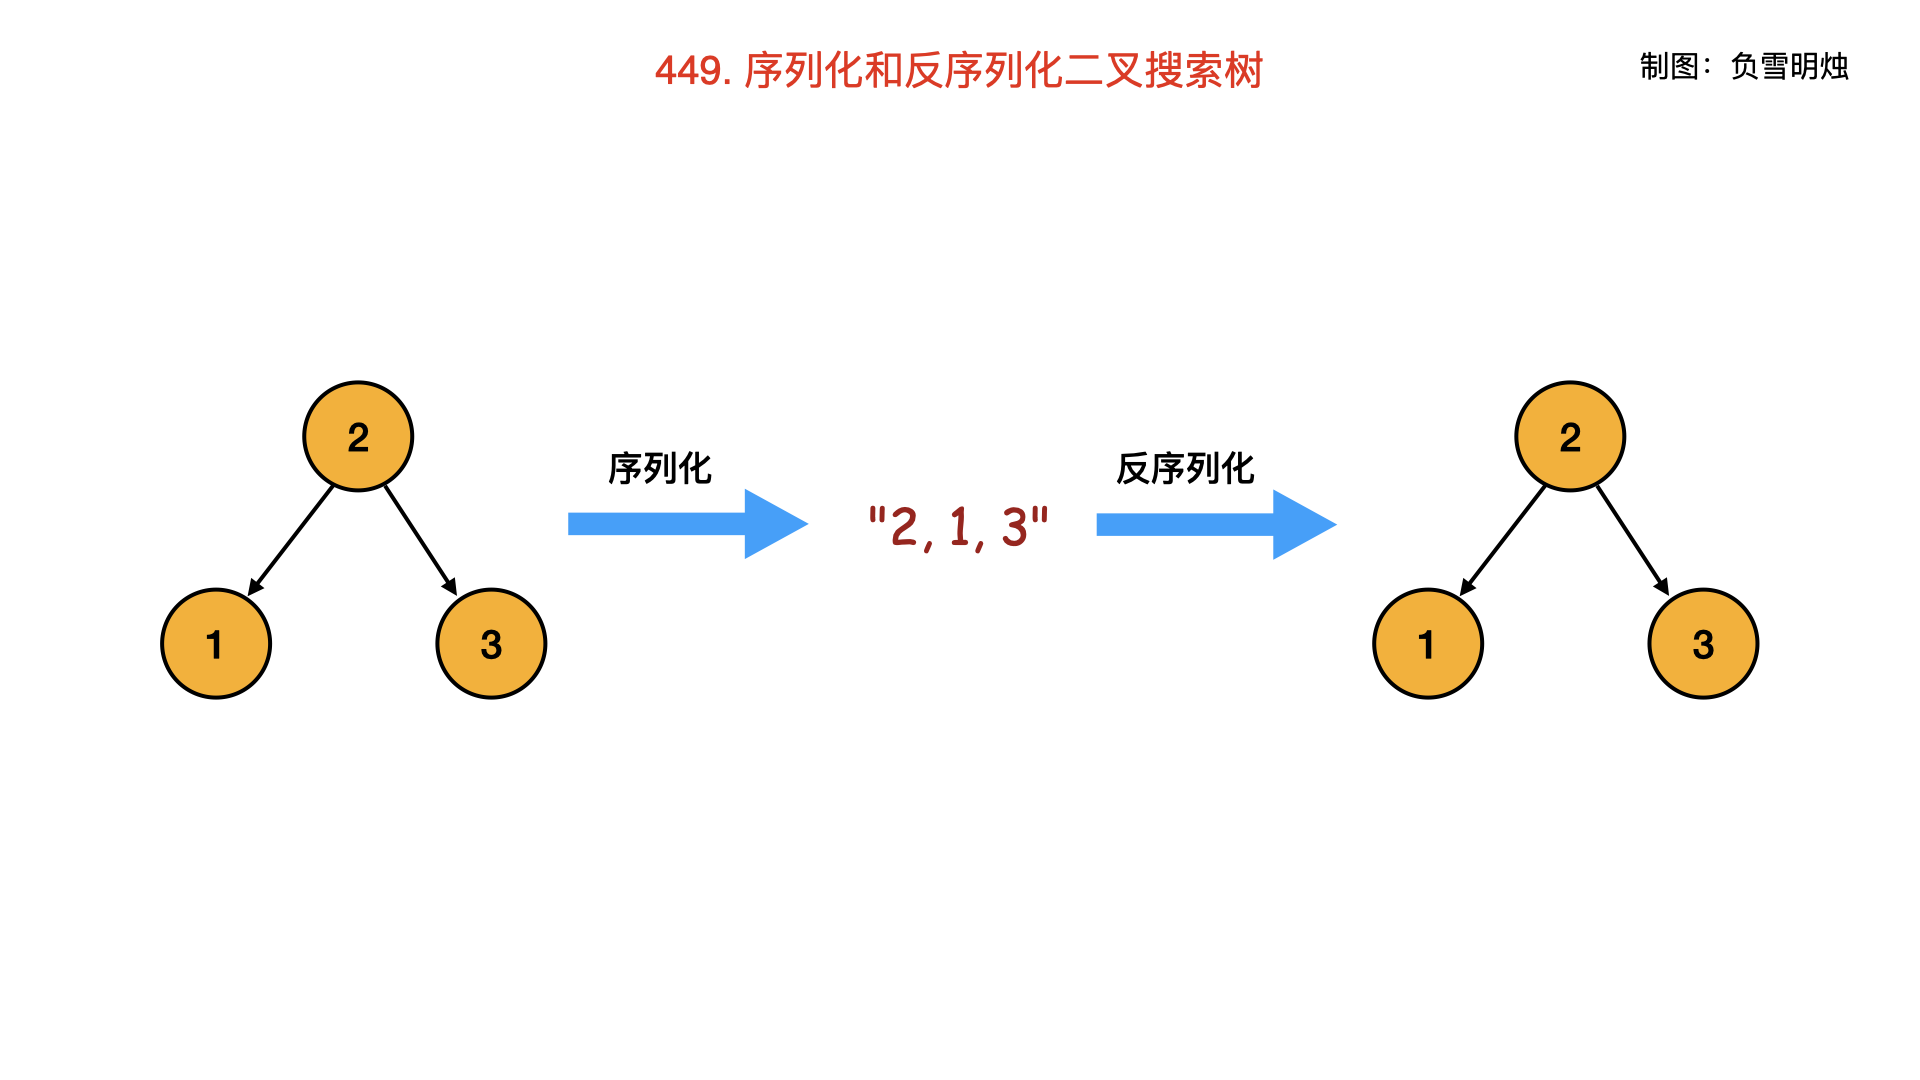 449. 序列化和反序列化二叉搜索树.001.png